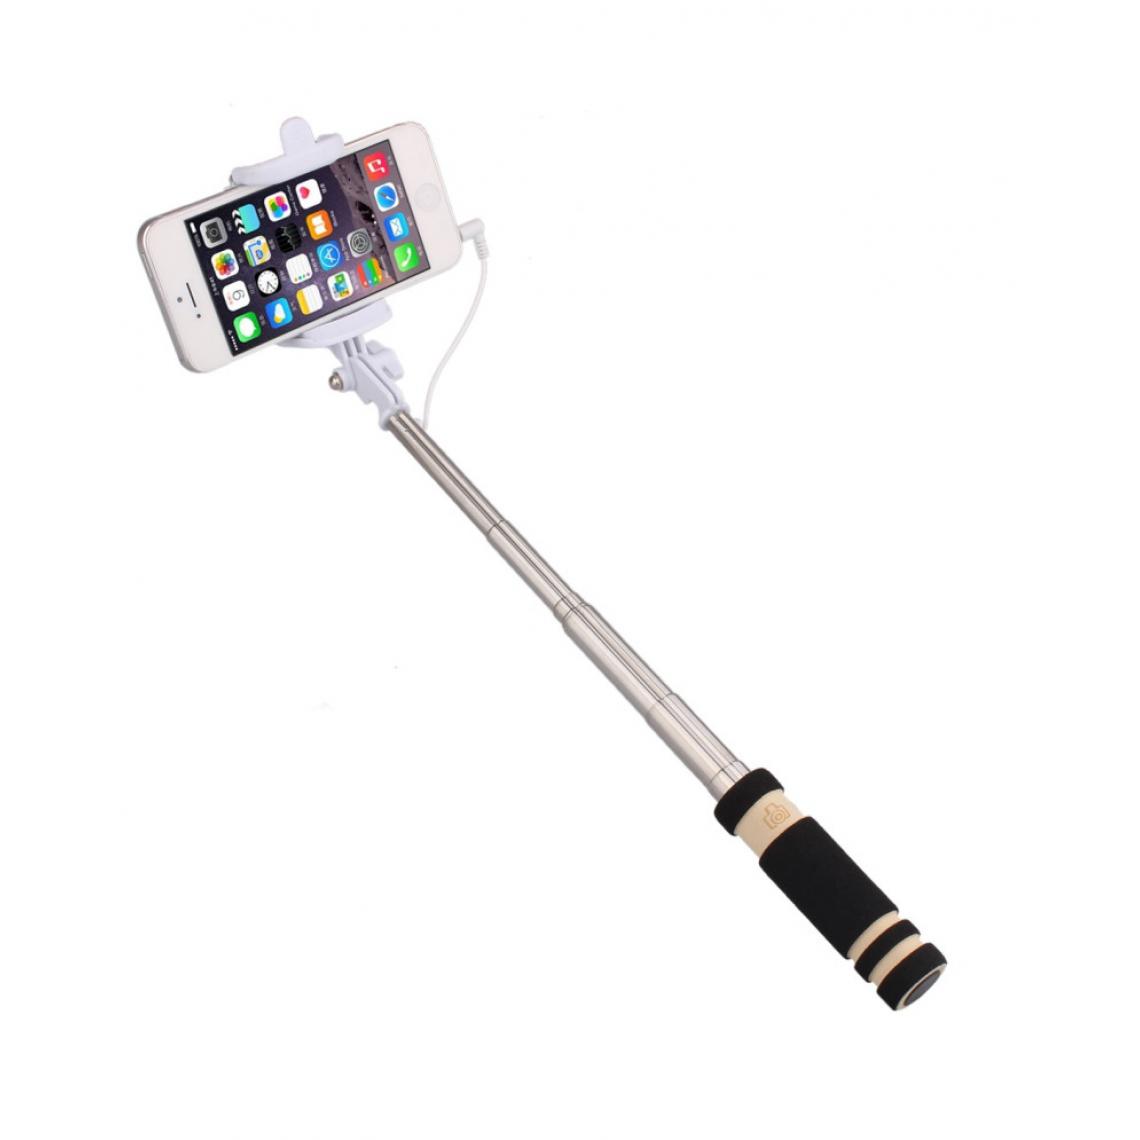 Shot - Mini Perche Selfie pour "SAMSUNG Galaxy S10 Lite" Smartphone avec Cable Jack Selfie Stick Android IOS Reglable Bouton Photo (NOIR) - Autres accessoires smartphone